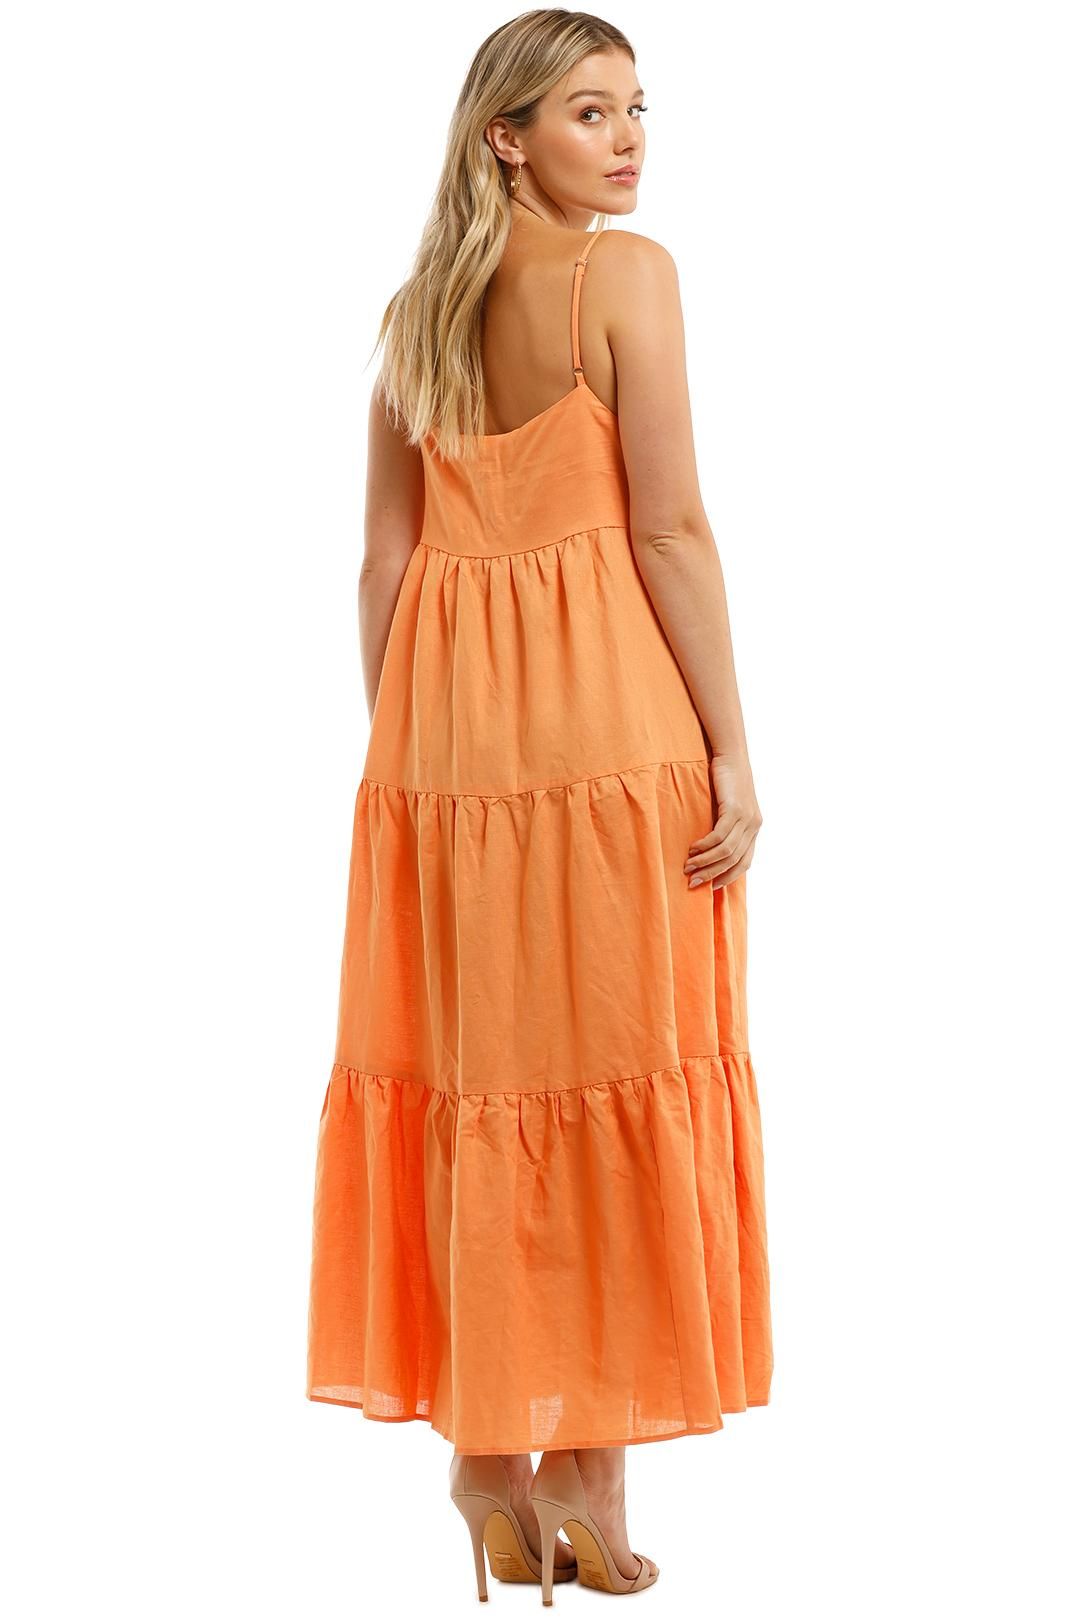 Charlie Holiday Isabella Maxi Orange Smocked Dress